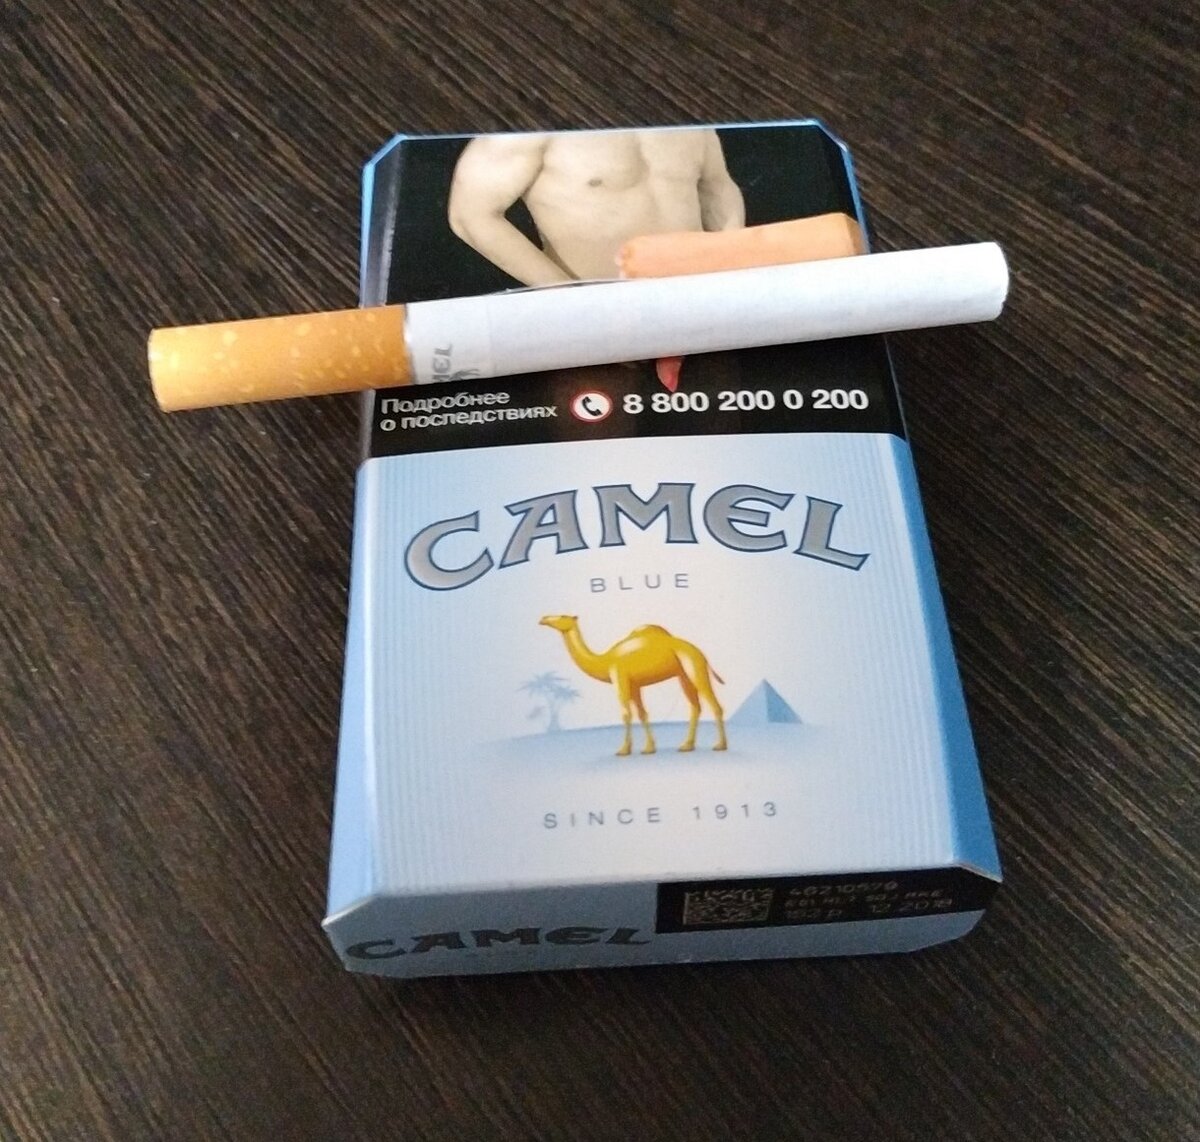 Сигареты новая пачка. Сигареты кэмел Compact Yellow. Camel 1913 пачка сигарет. Кэмел желтый кэмел сигареты. Сигареты кэмел оригинал желтый (Camel Original Filters).